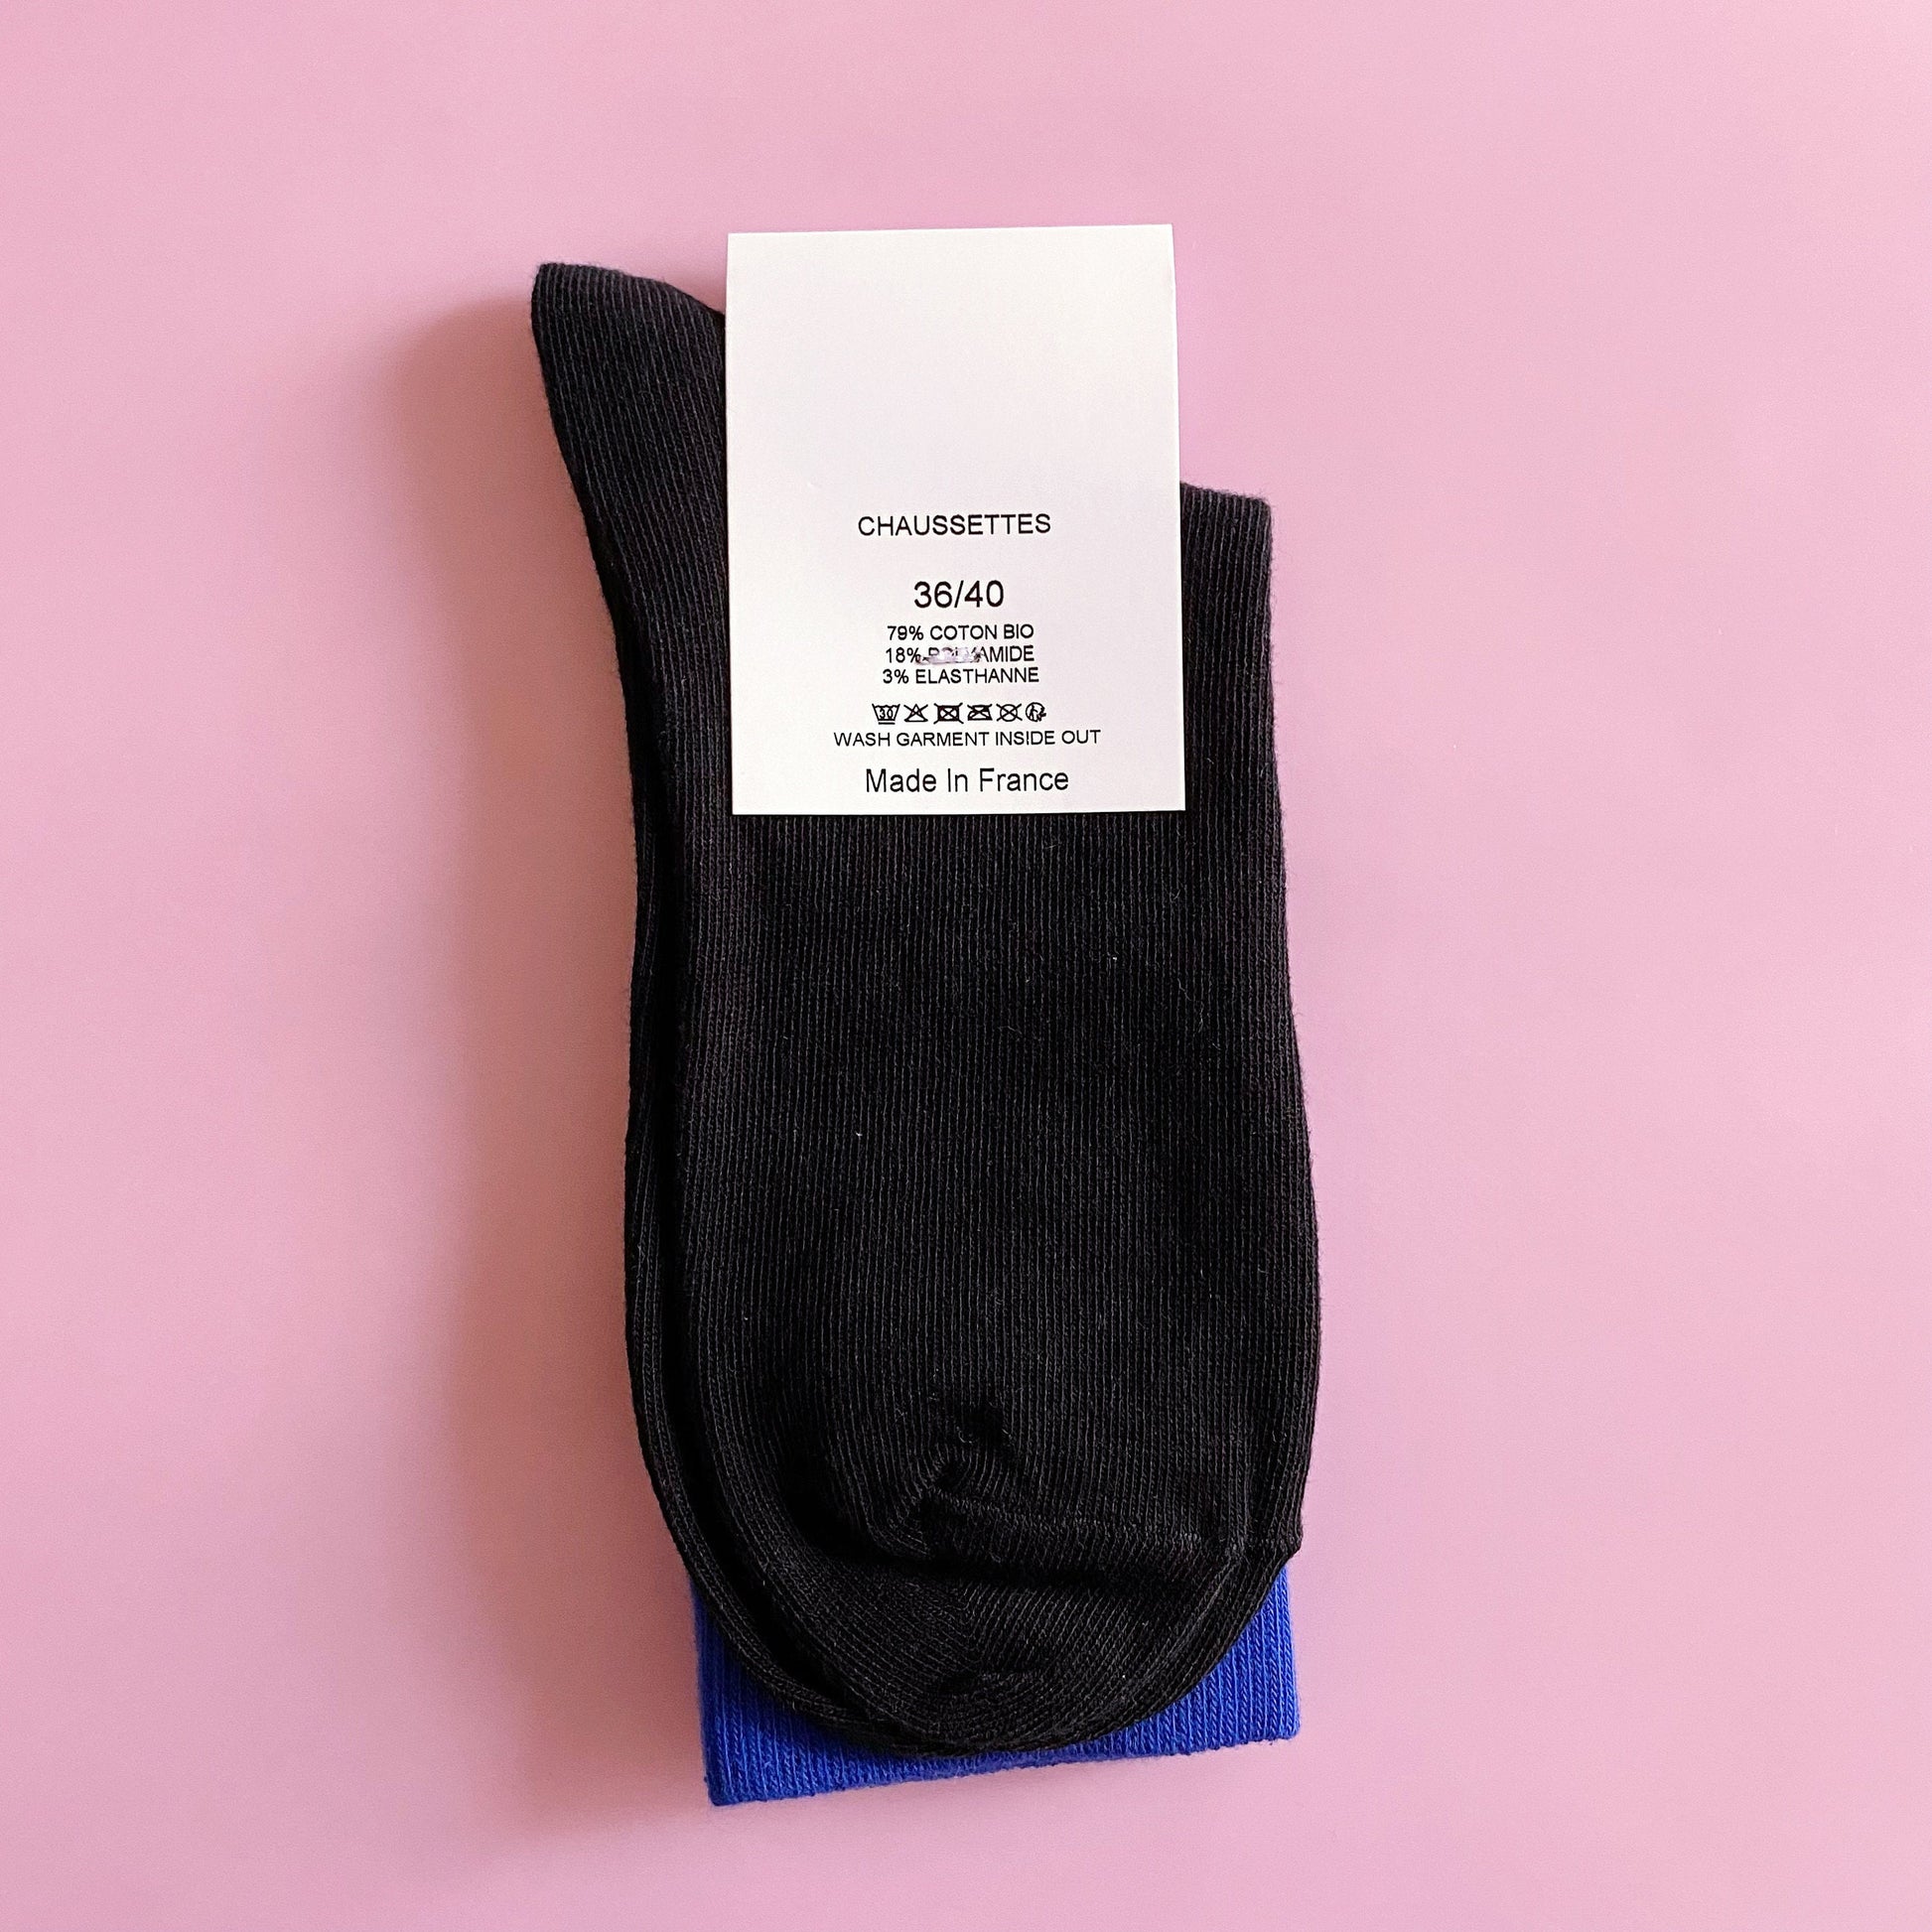 Chaussettes en coton bio, pour hommes ou femmes, made in France